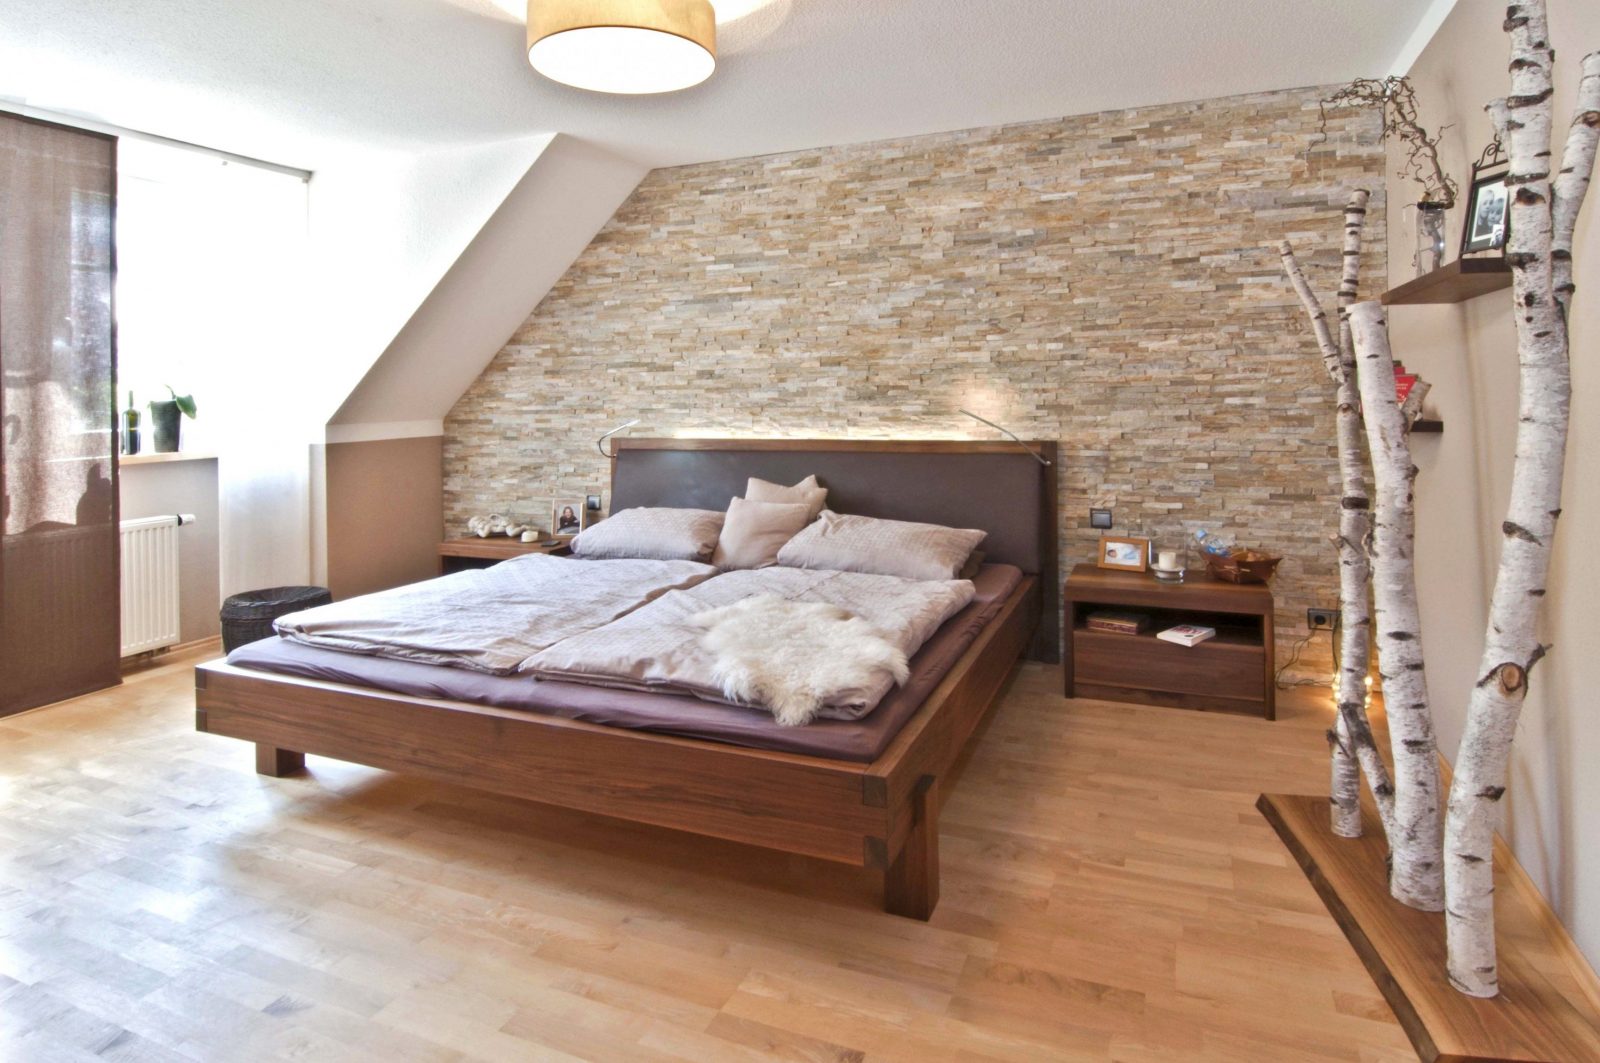 Groß Großartig Ideen Attraktive Wandgestaltung Hinter Bett Fotos Die von Cooles Bett Selber Bauen Bild